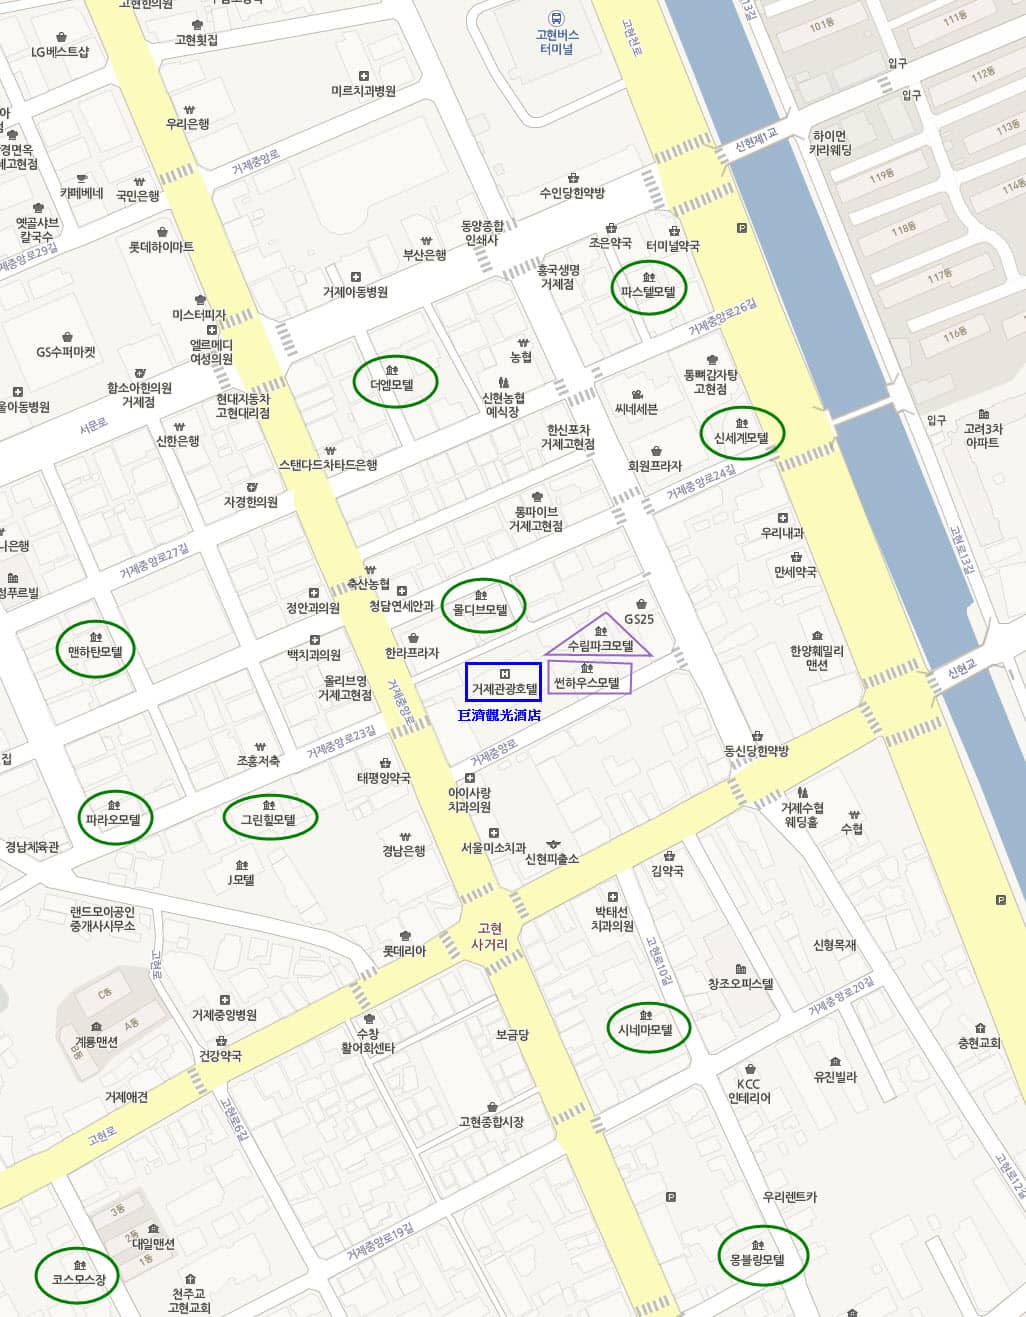 韓國自助旅遊: 巨濟島古縣市主要旅館分佈地圖